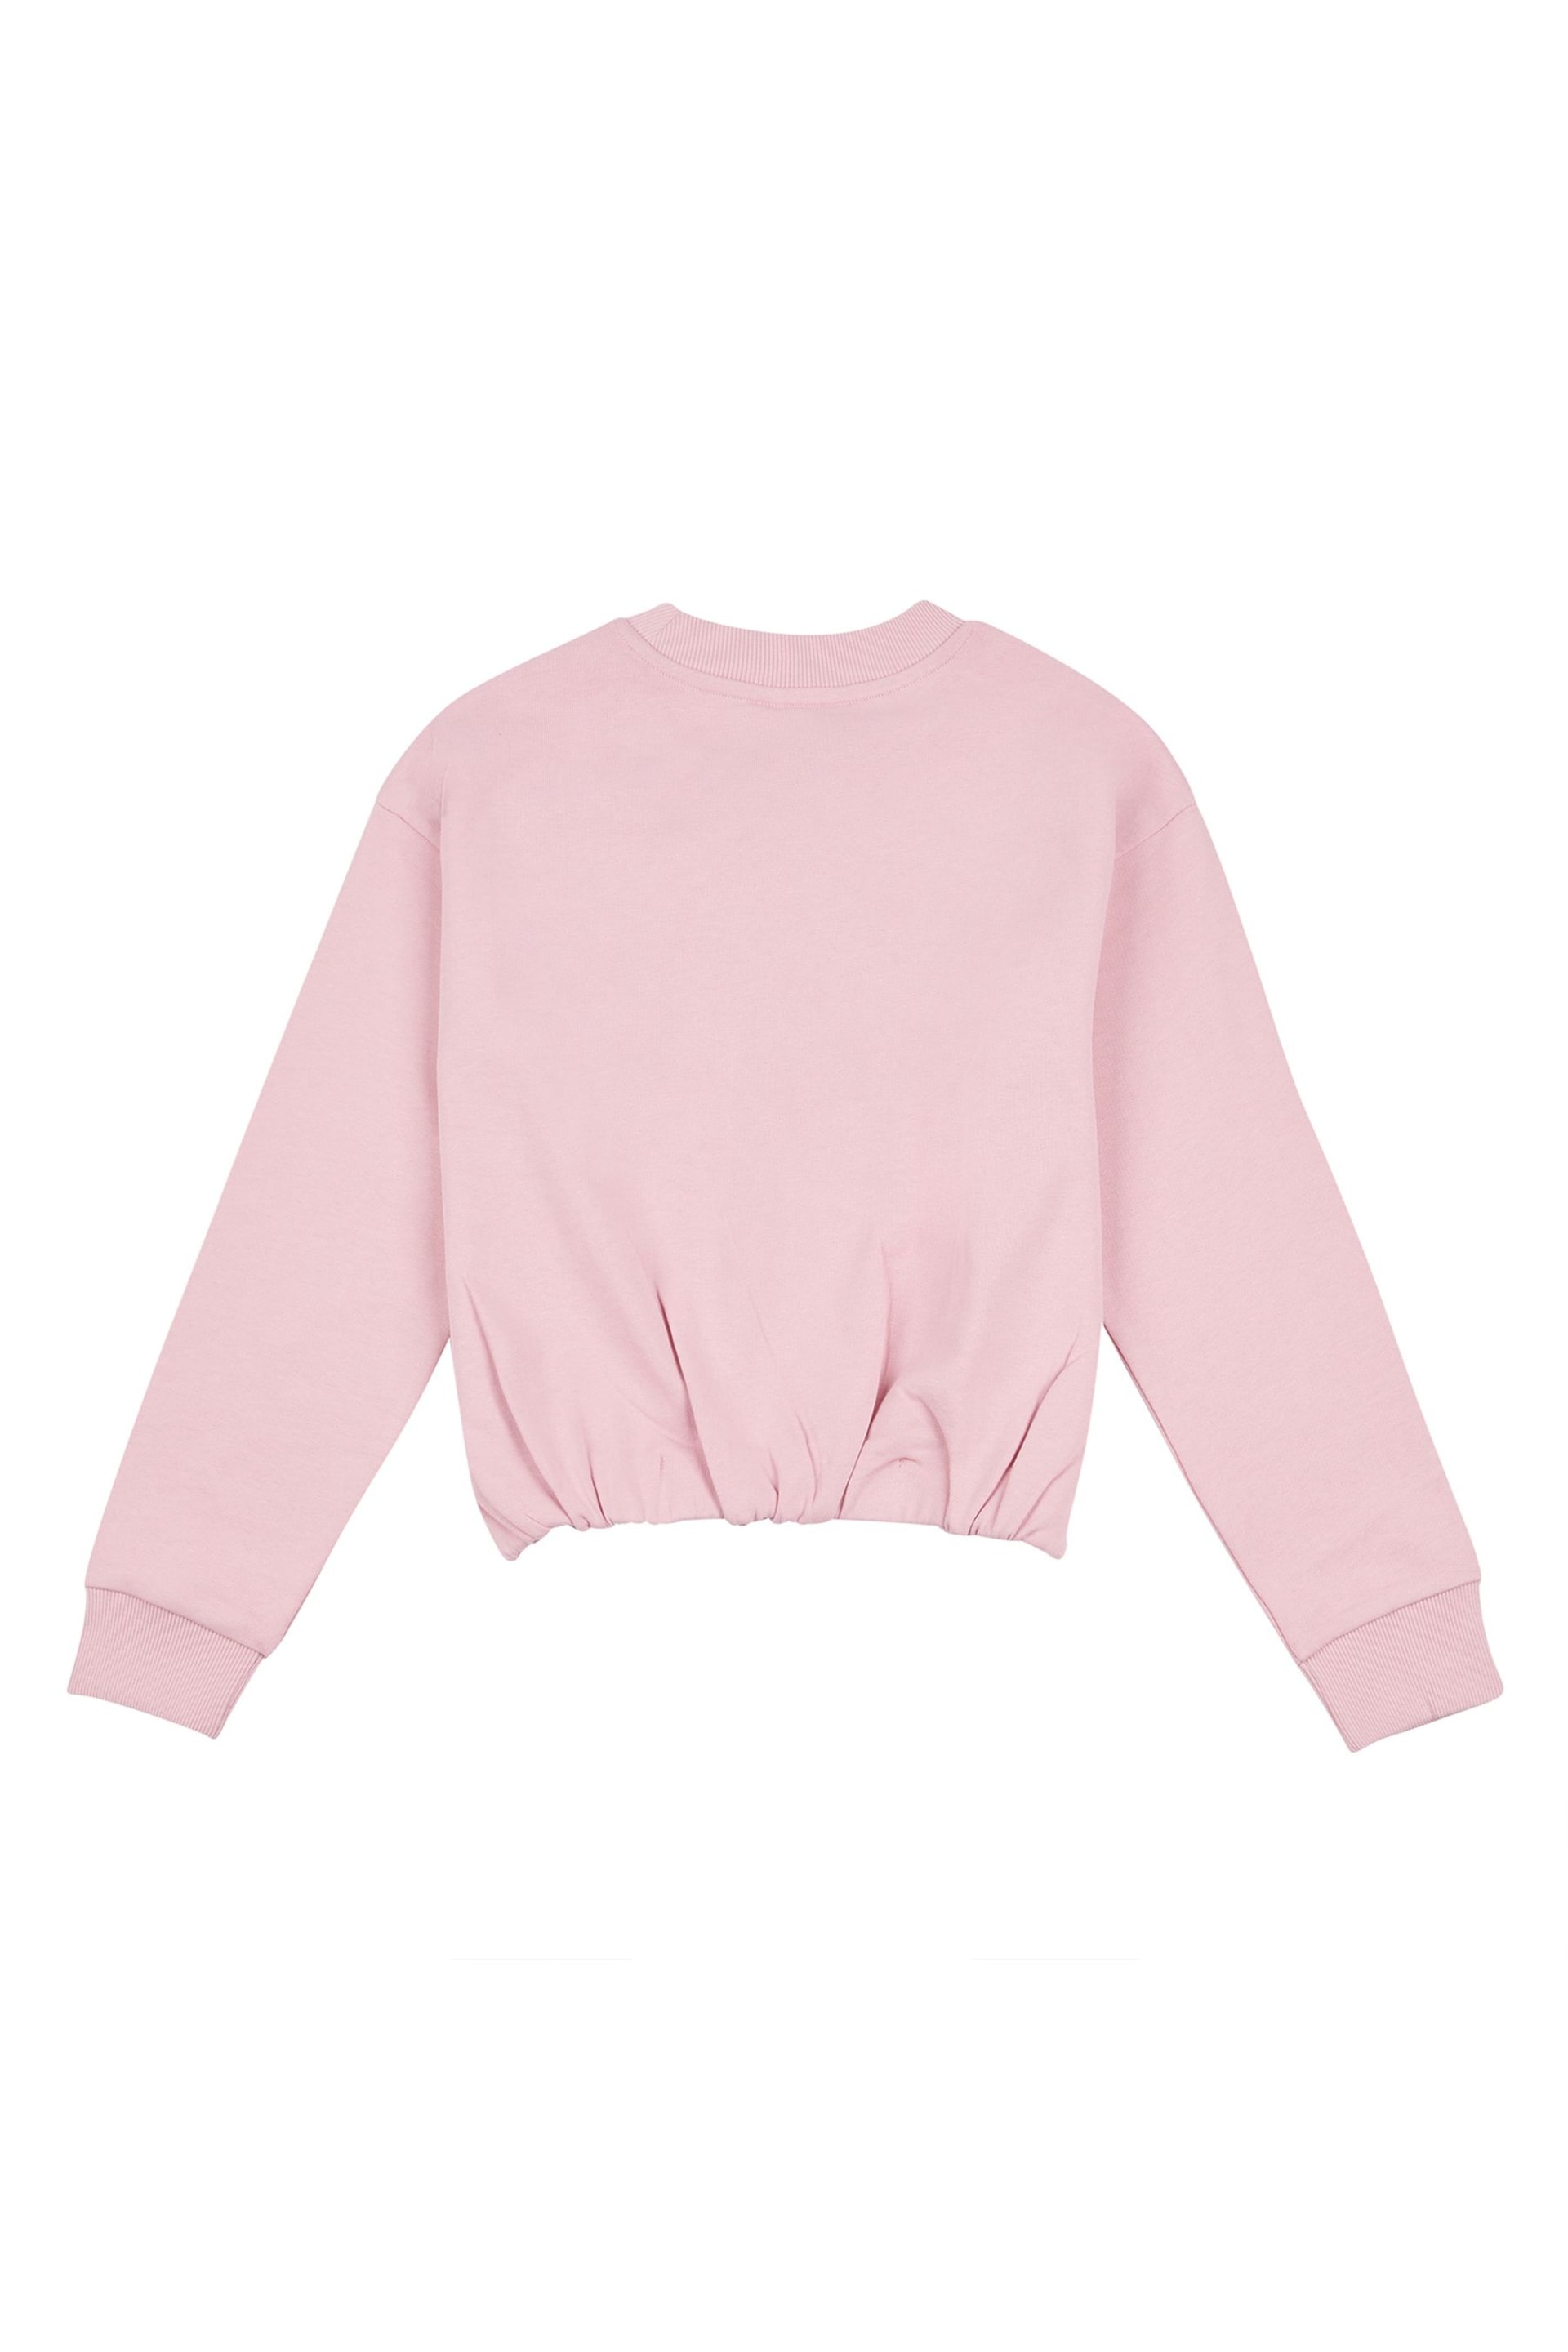 Lee Girls Pink Kansas Graphic Crew Sweatshirt - Image 7 of 8